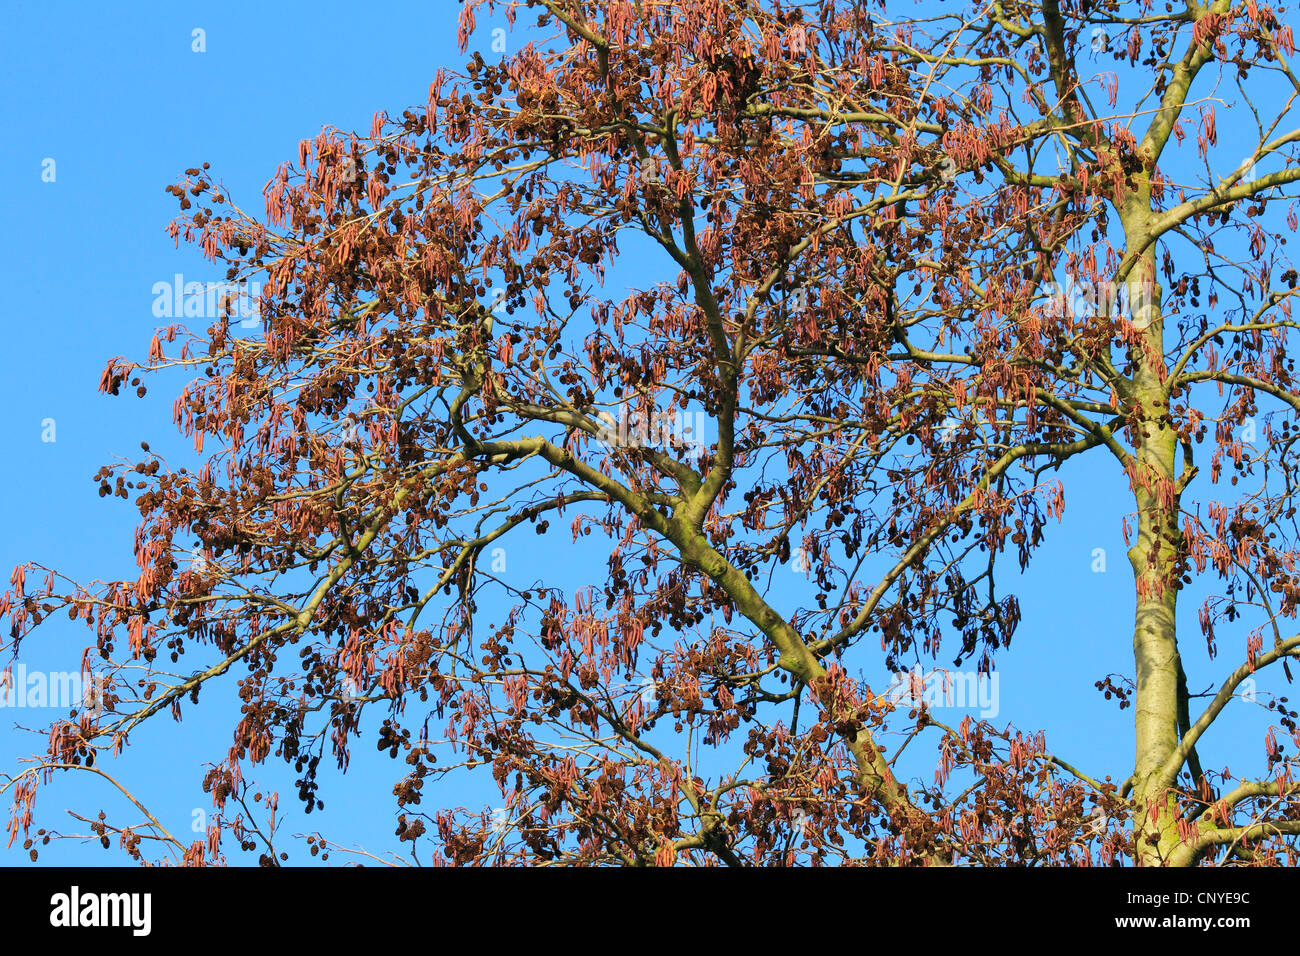 Pin noir d'Europe, l'aulne (Alnus glutinosa), l'aulne en fleurs, Allemagne Banque D'Images